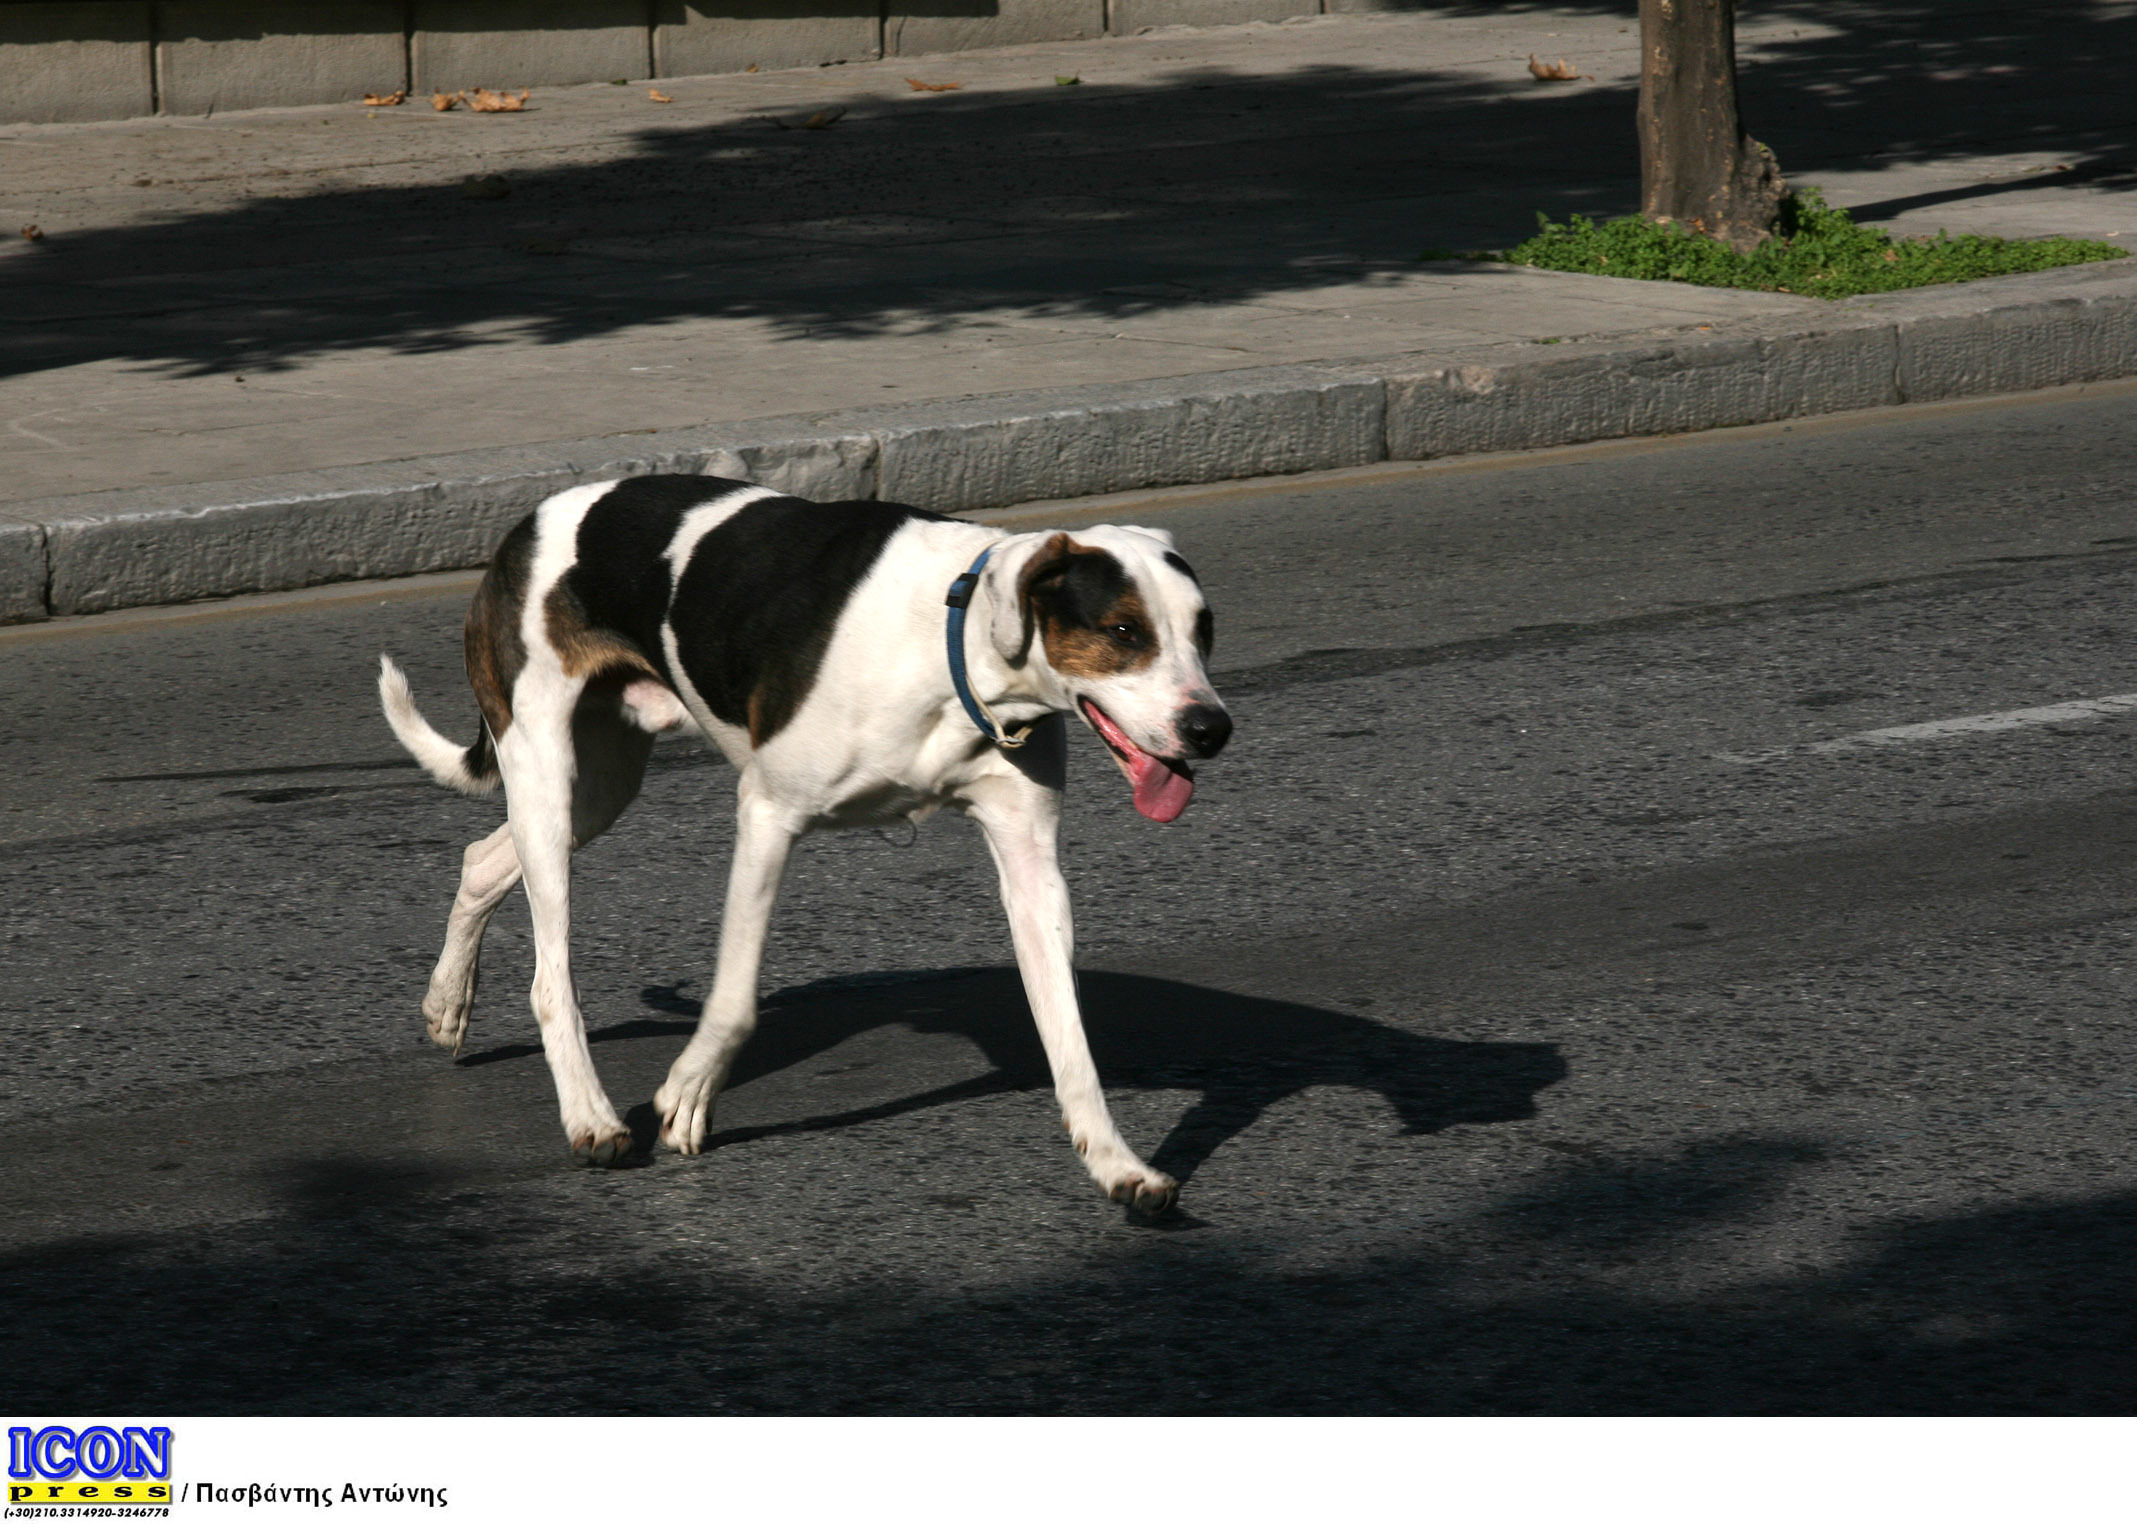 Οδηγός του Αστικού ΚΤΕΛ Λαμίας επιτάχυνε όταν είδε σκυλί στο δρόμο του!